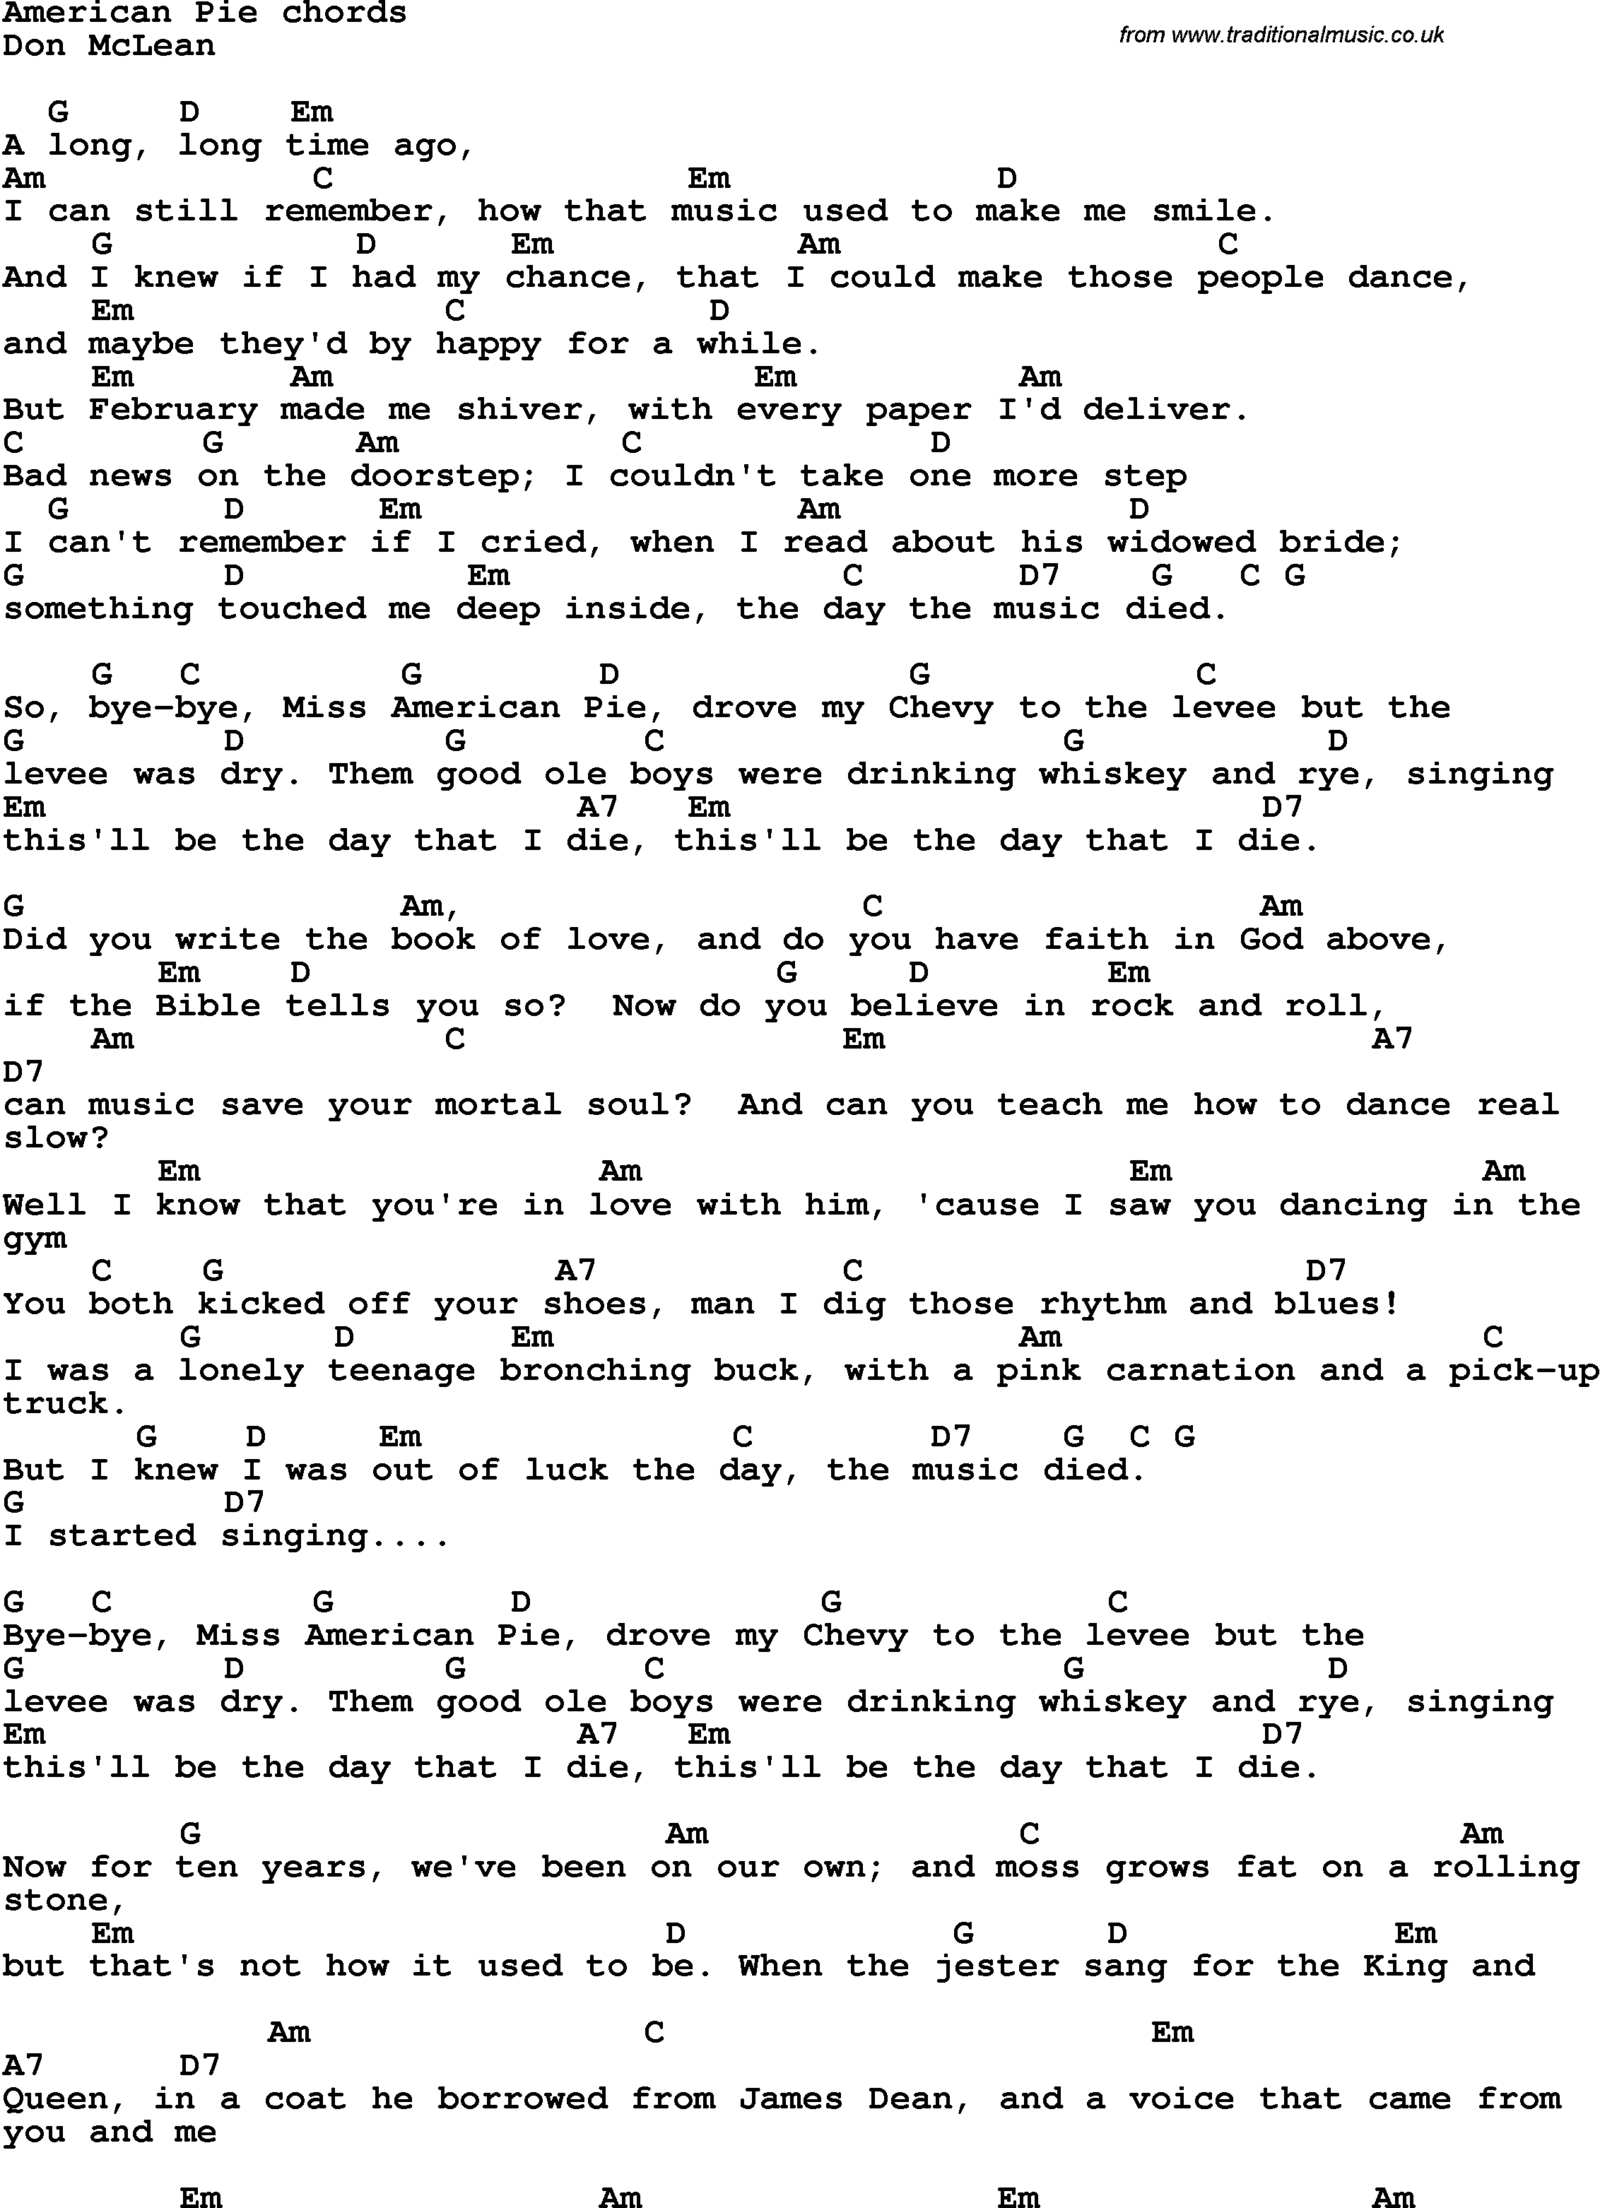 American Pie Chords Top 25 American Pie Lyrics Hd Wallpapers